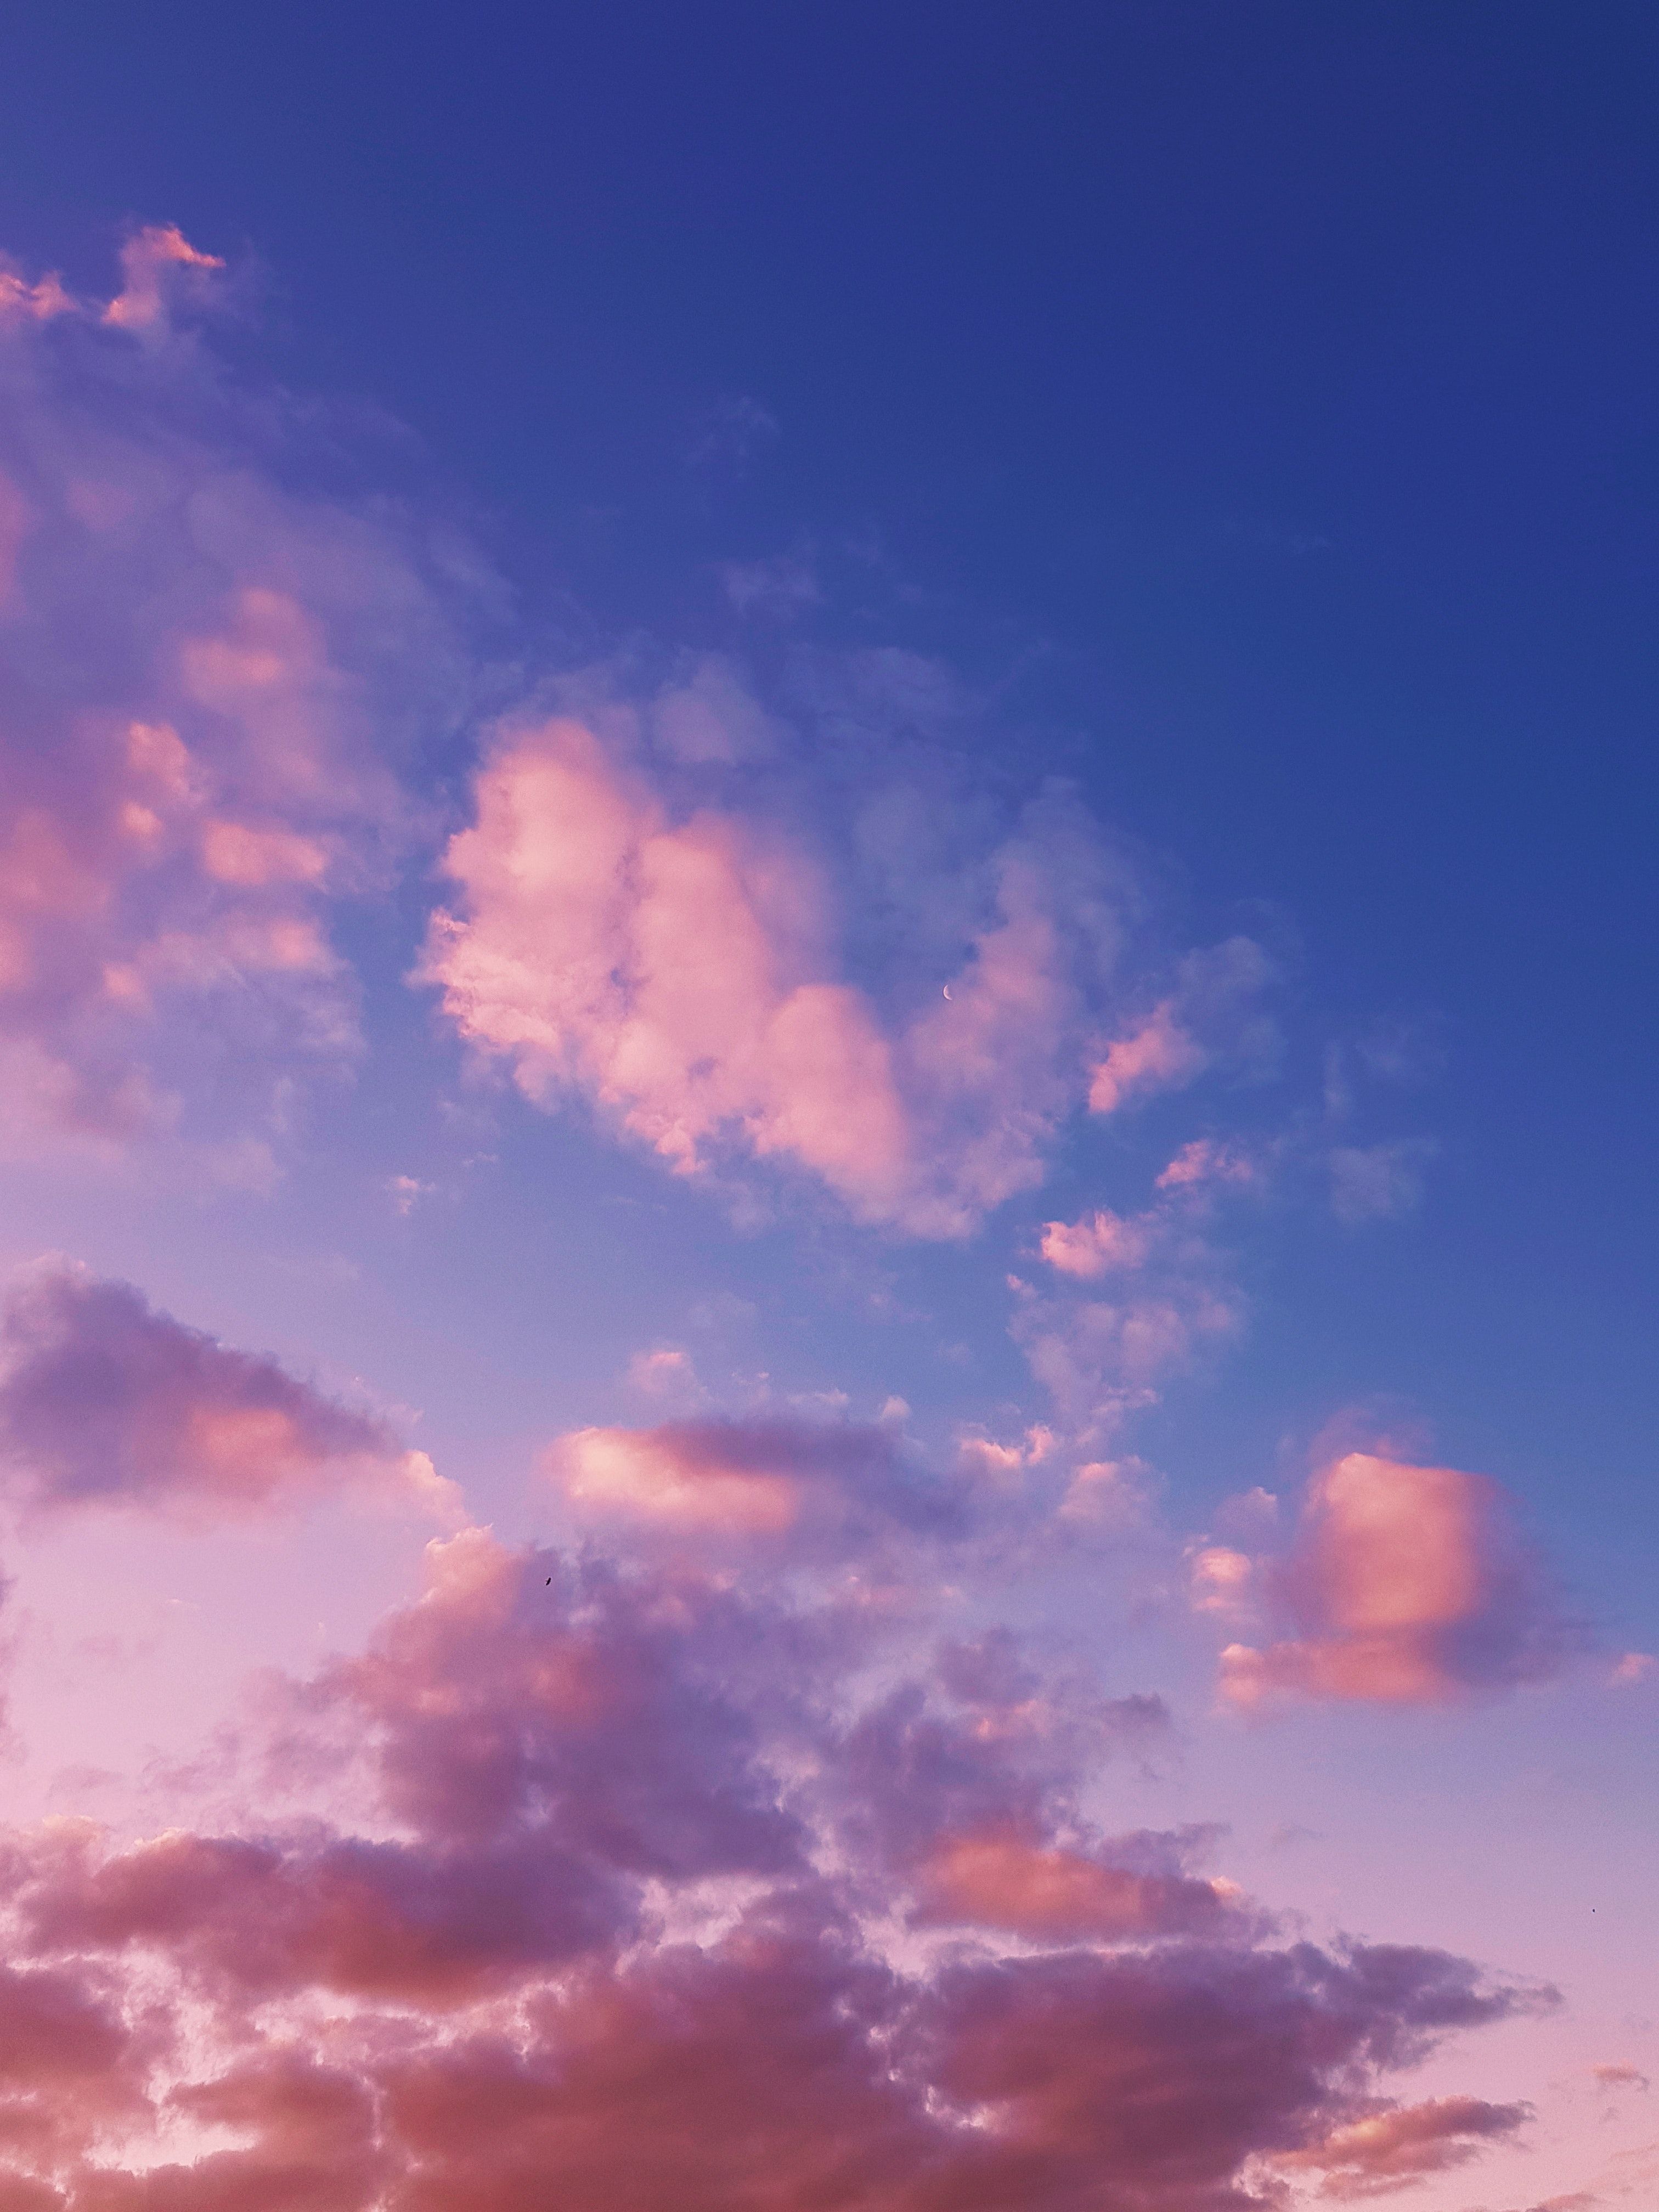  Sonnenaufgang Hintergrundbild 3024x4032. Kostenloses Foto zum Thema: ästhetische tapete, ästhetischer hintergrund, atmosphäre, dämmerung, farbe, flaumig, geschwollen, himmel, landschaft, luft, meteorologie, pastell, schöner himmel, skyscape, sonnenaufgang, sonnenuntergang, wetter, wolken